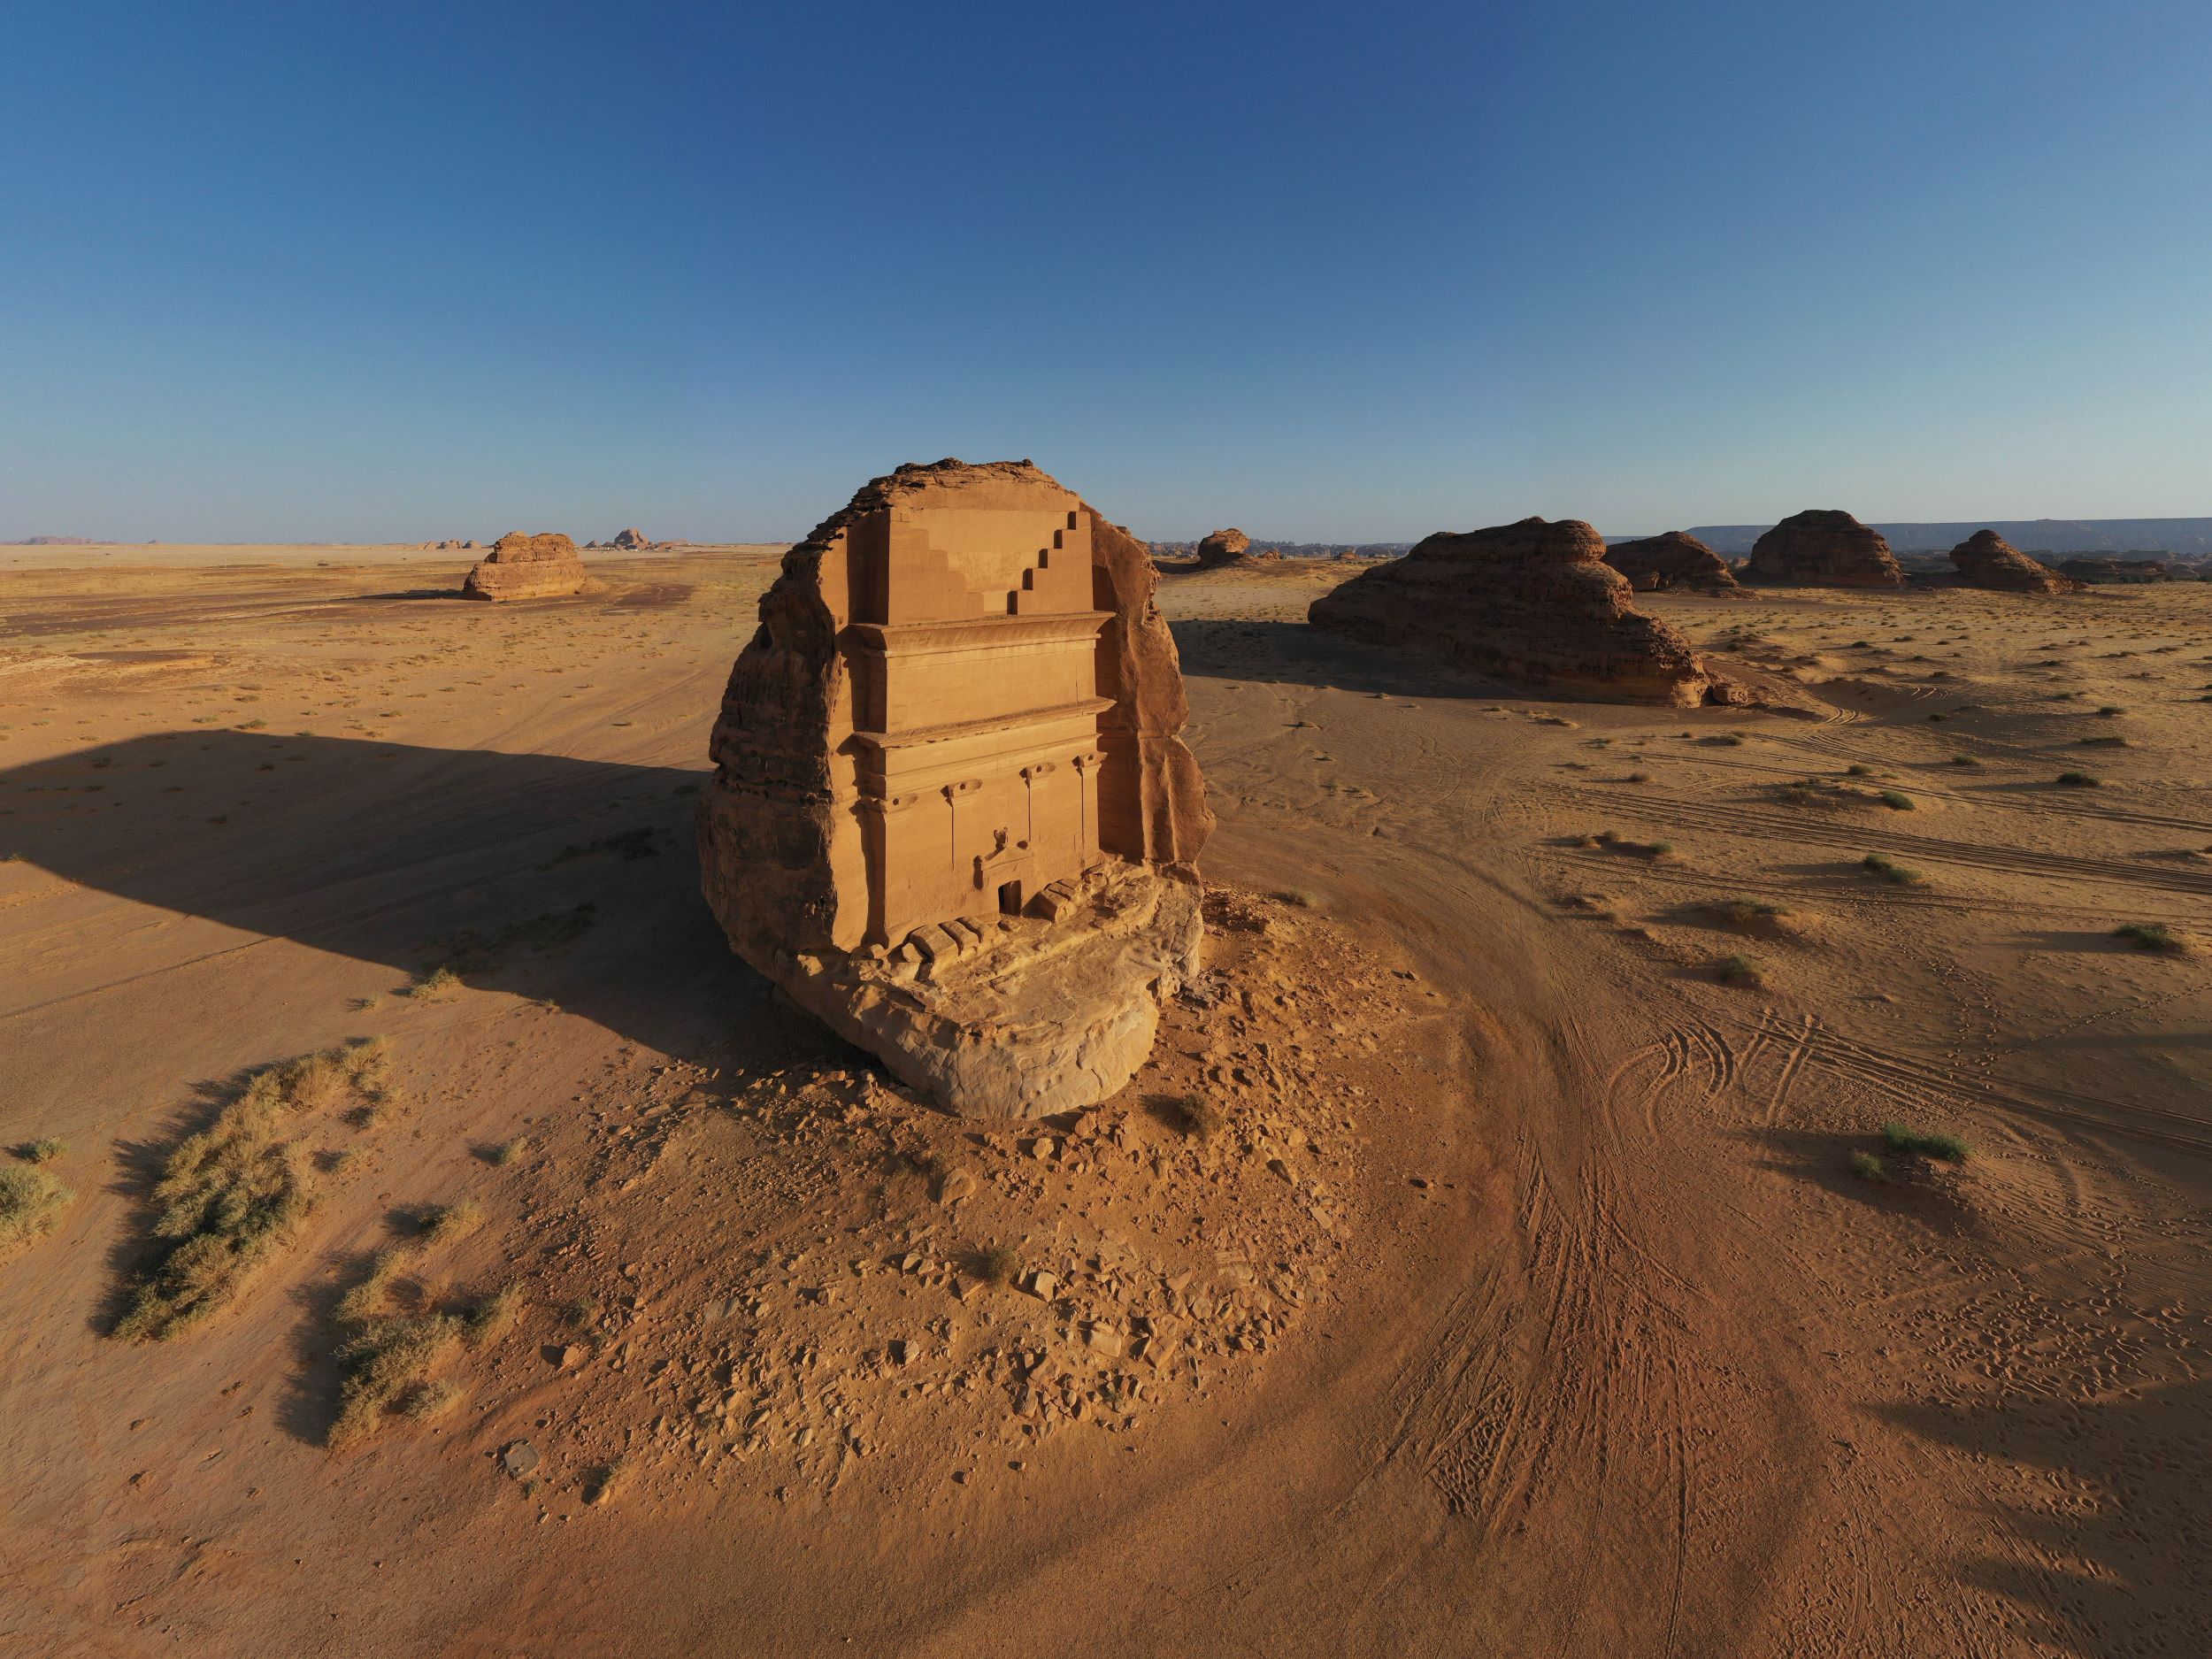 保留完整的 Hegra 巨岩古墓，展現了古代納巴泰文明高超的建築工藝技術。